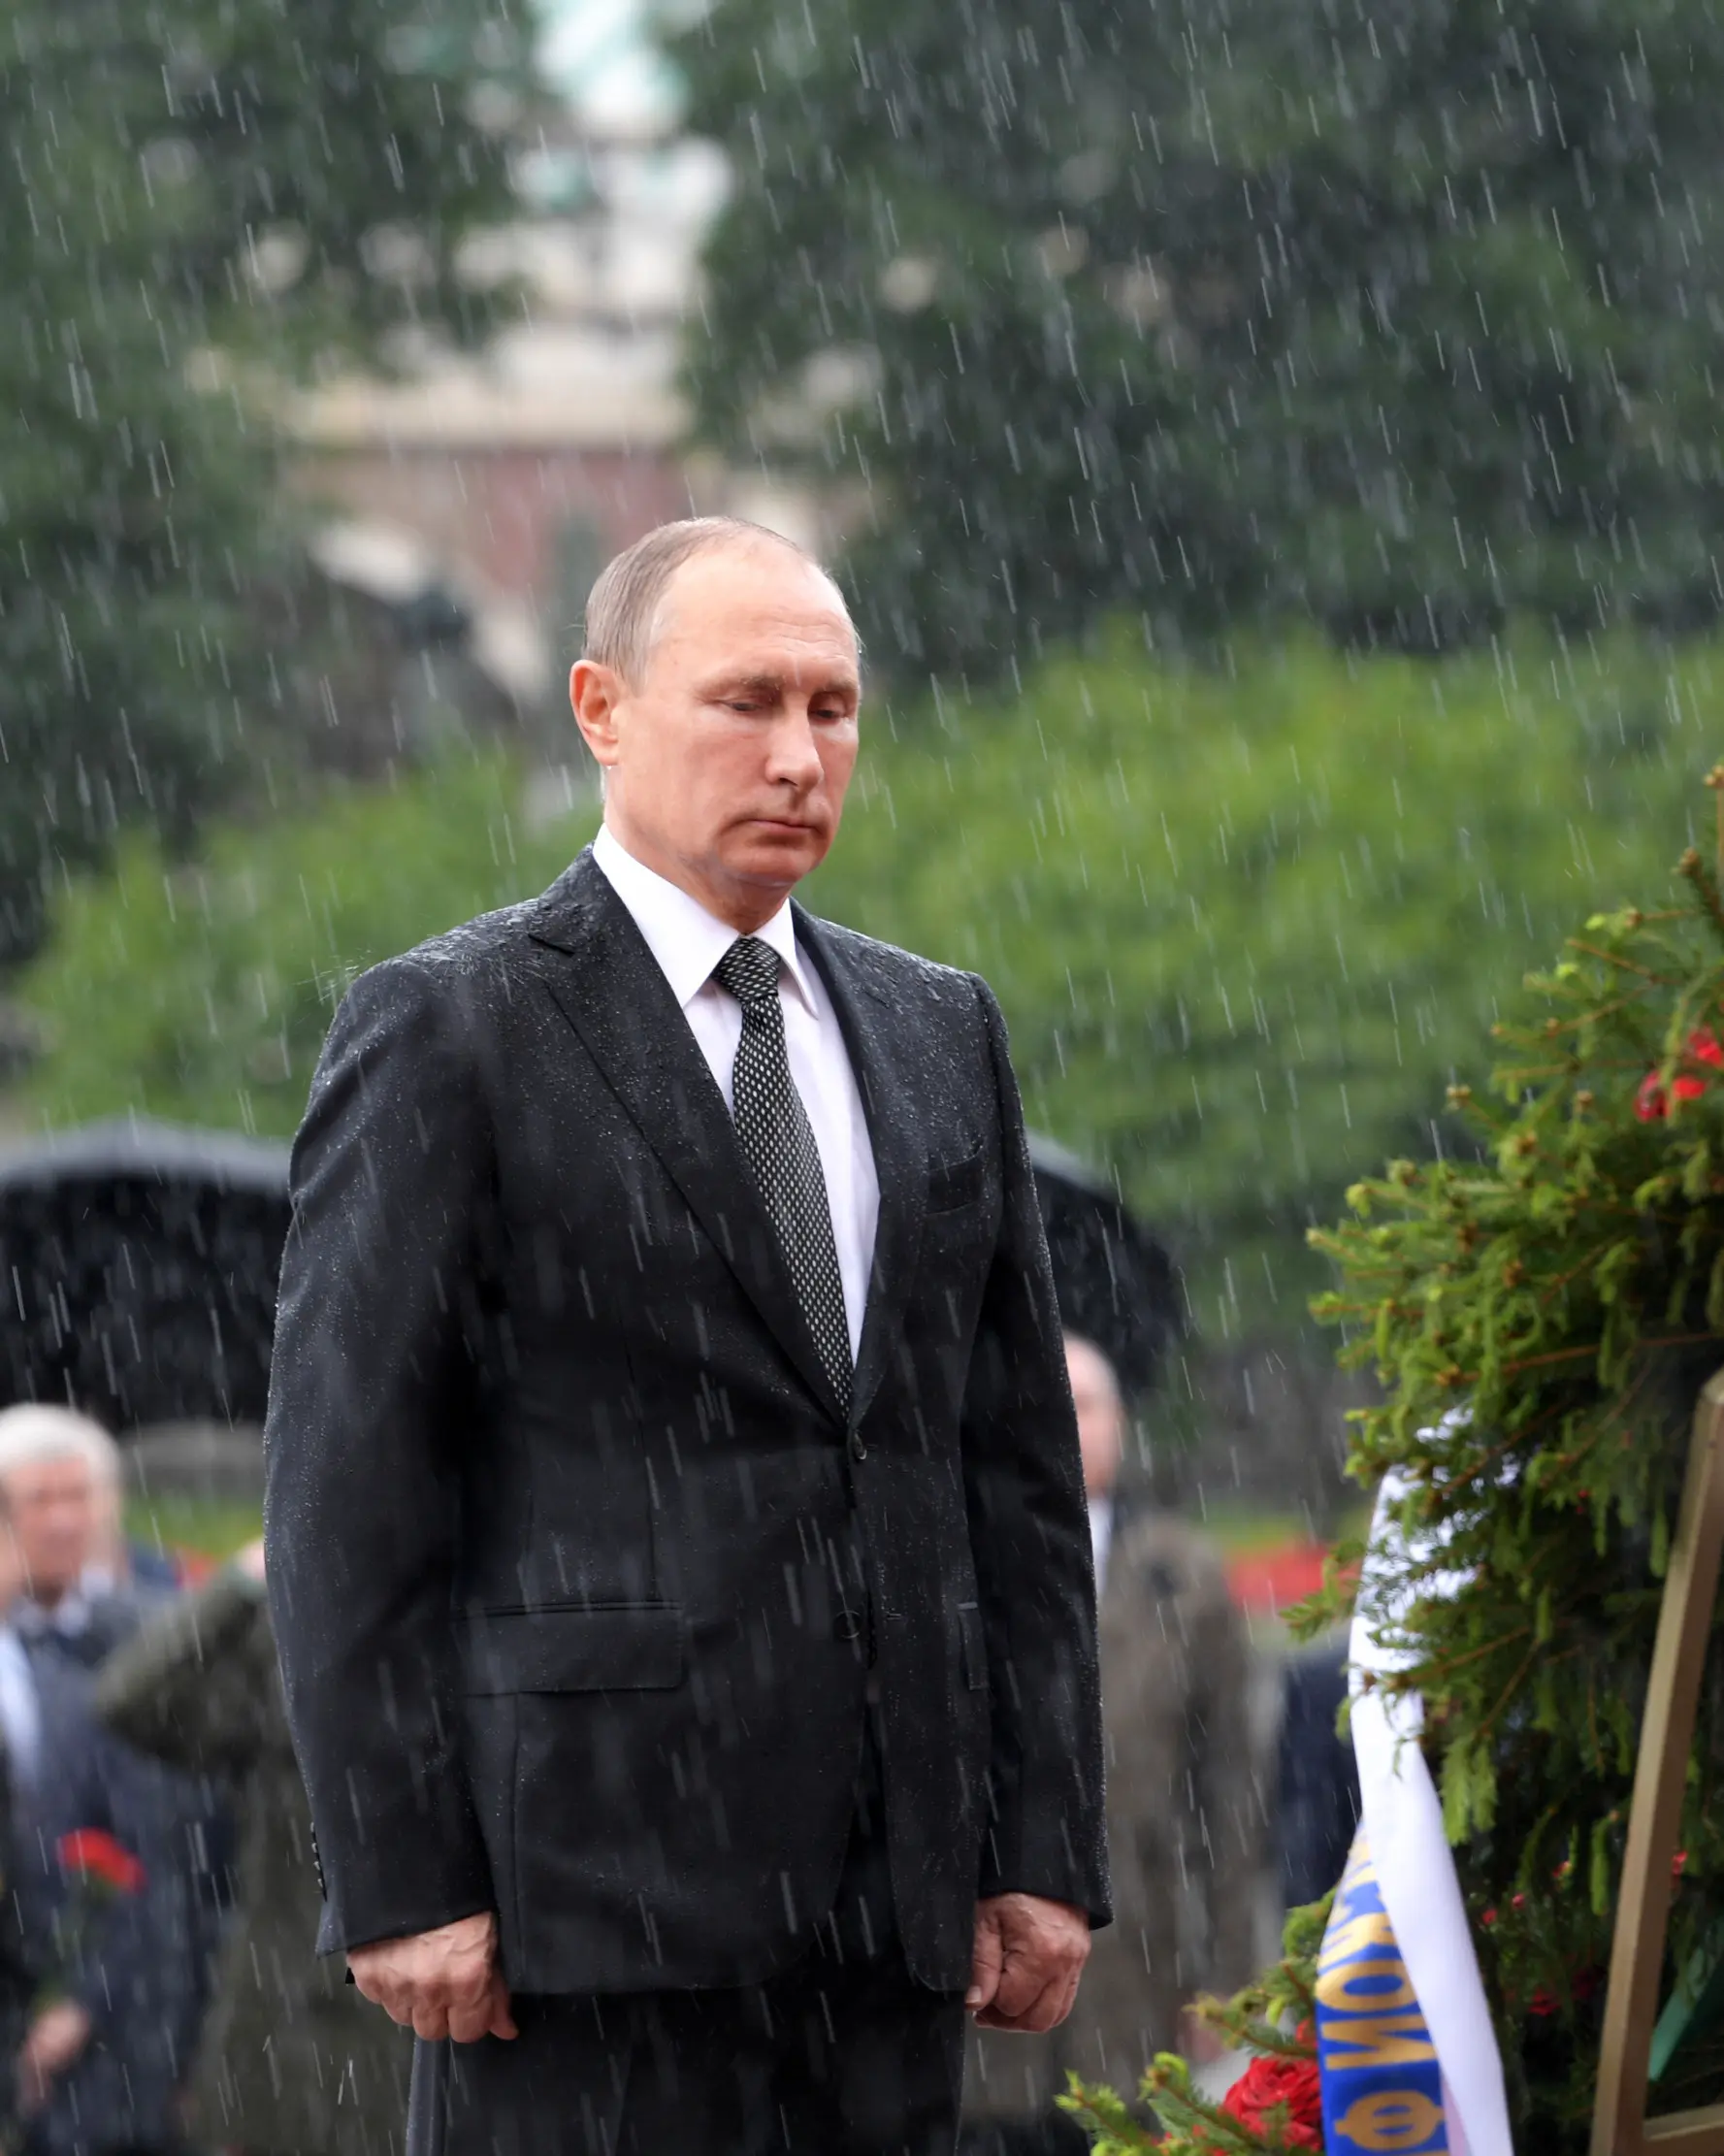 Presiden Rusia Vladimir Putin berdiri di tengah hujan selama upacara kehormatan untuk memperingati invasi Nazi Jerman pada 1941 di Benteng Kremlin, di Moskow, Kamis (22/6). (Alexei Druzhinin/Sputnik, Kremlin Pool Photo via AP)